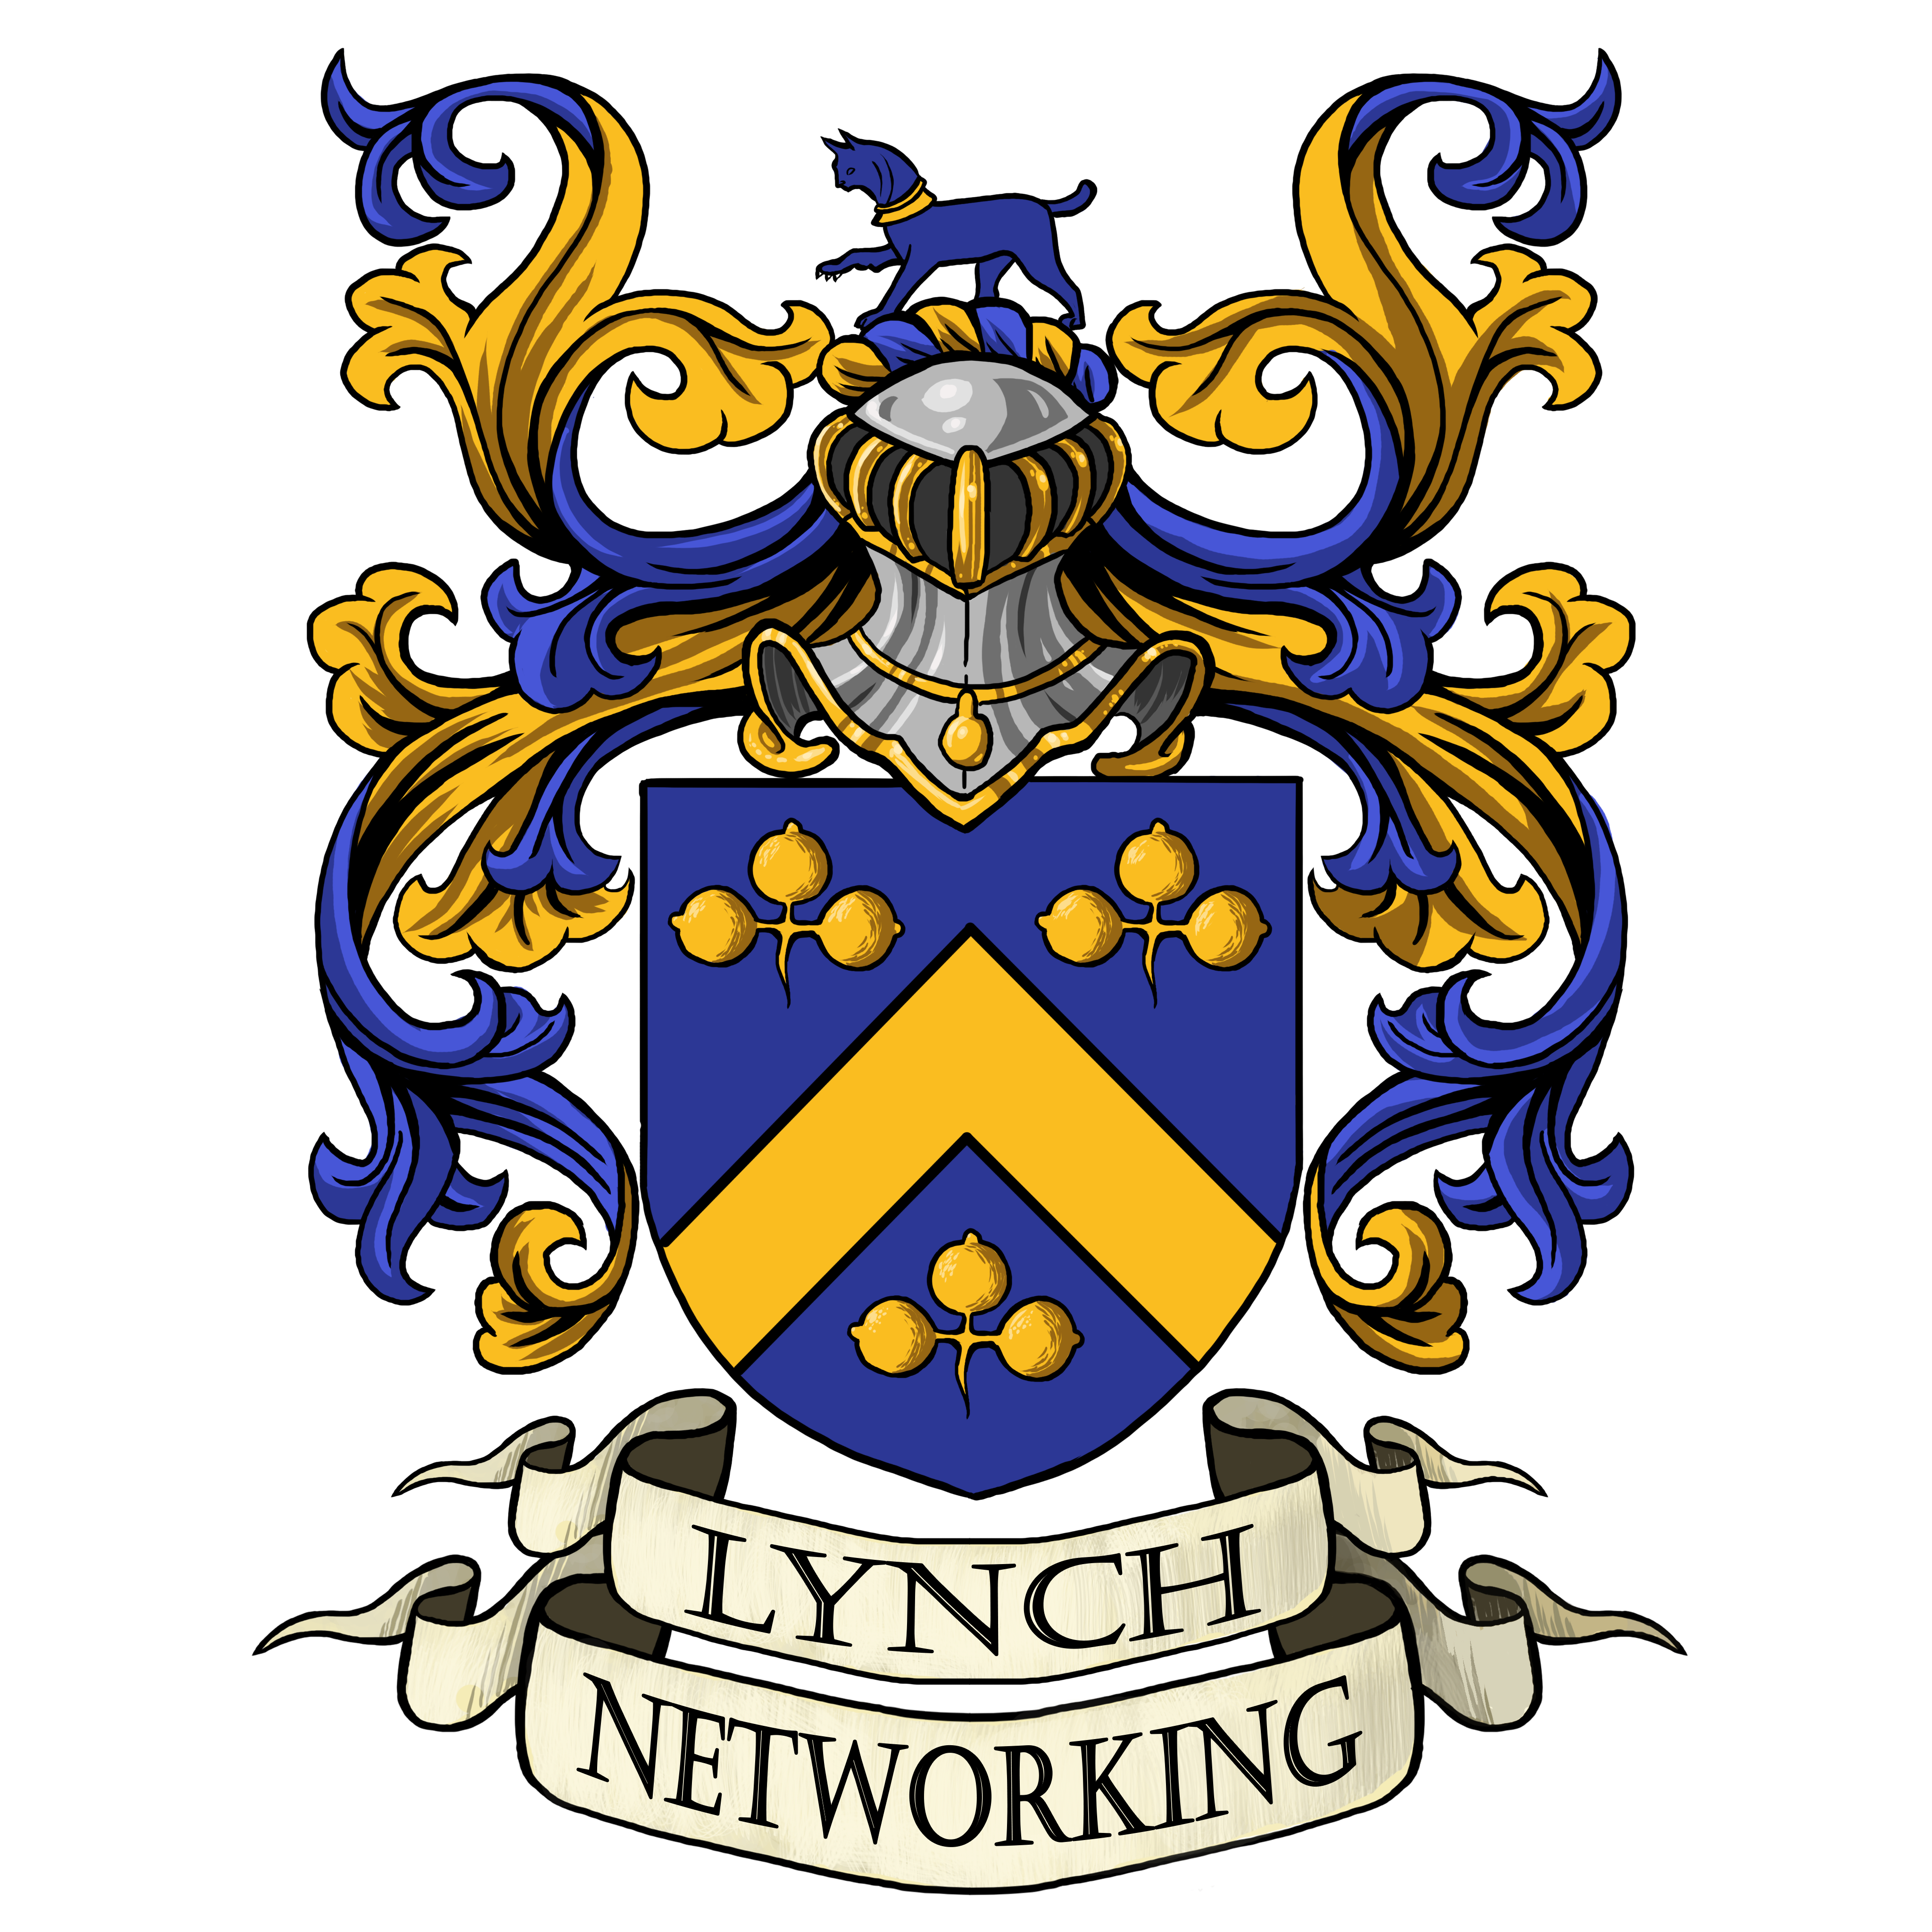 LynchNetworking